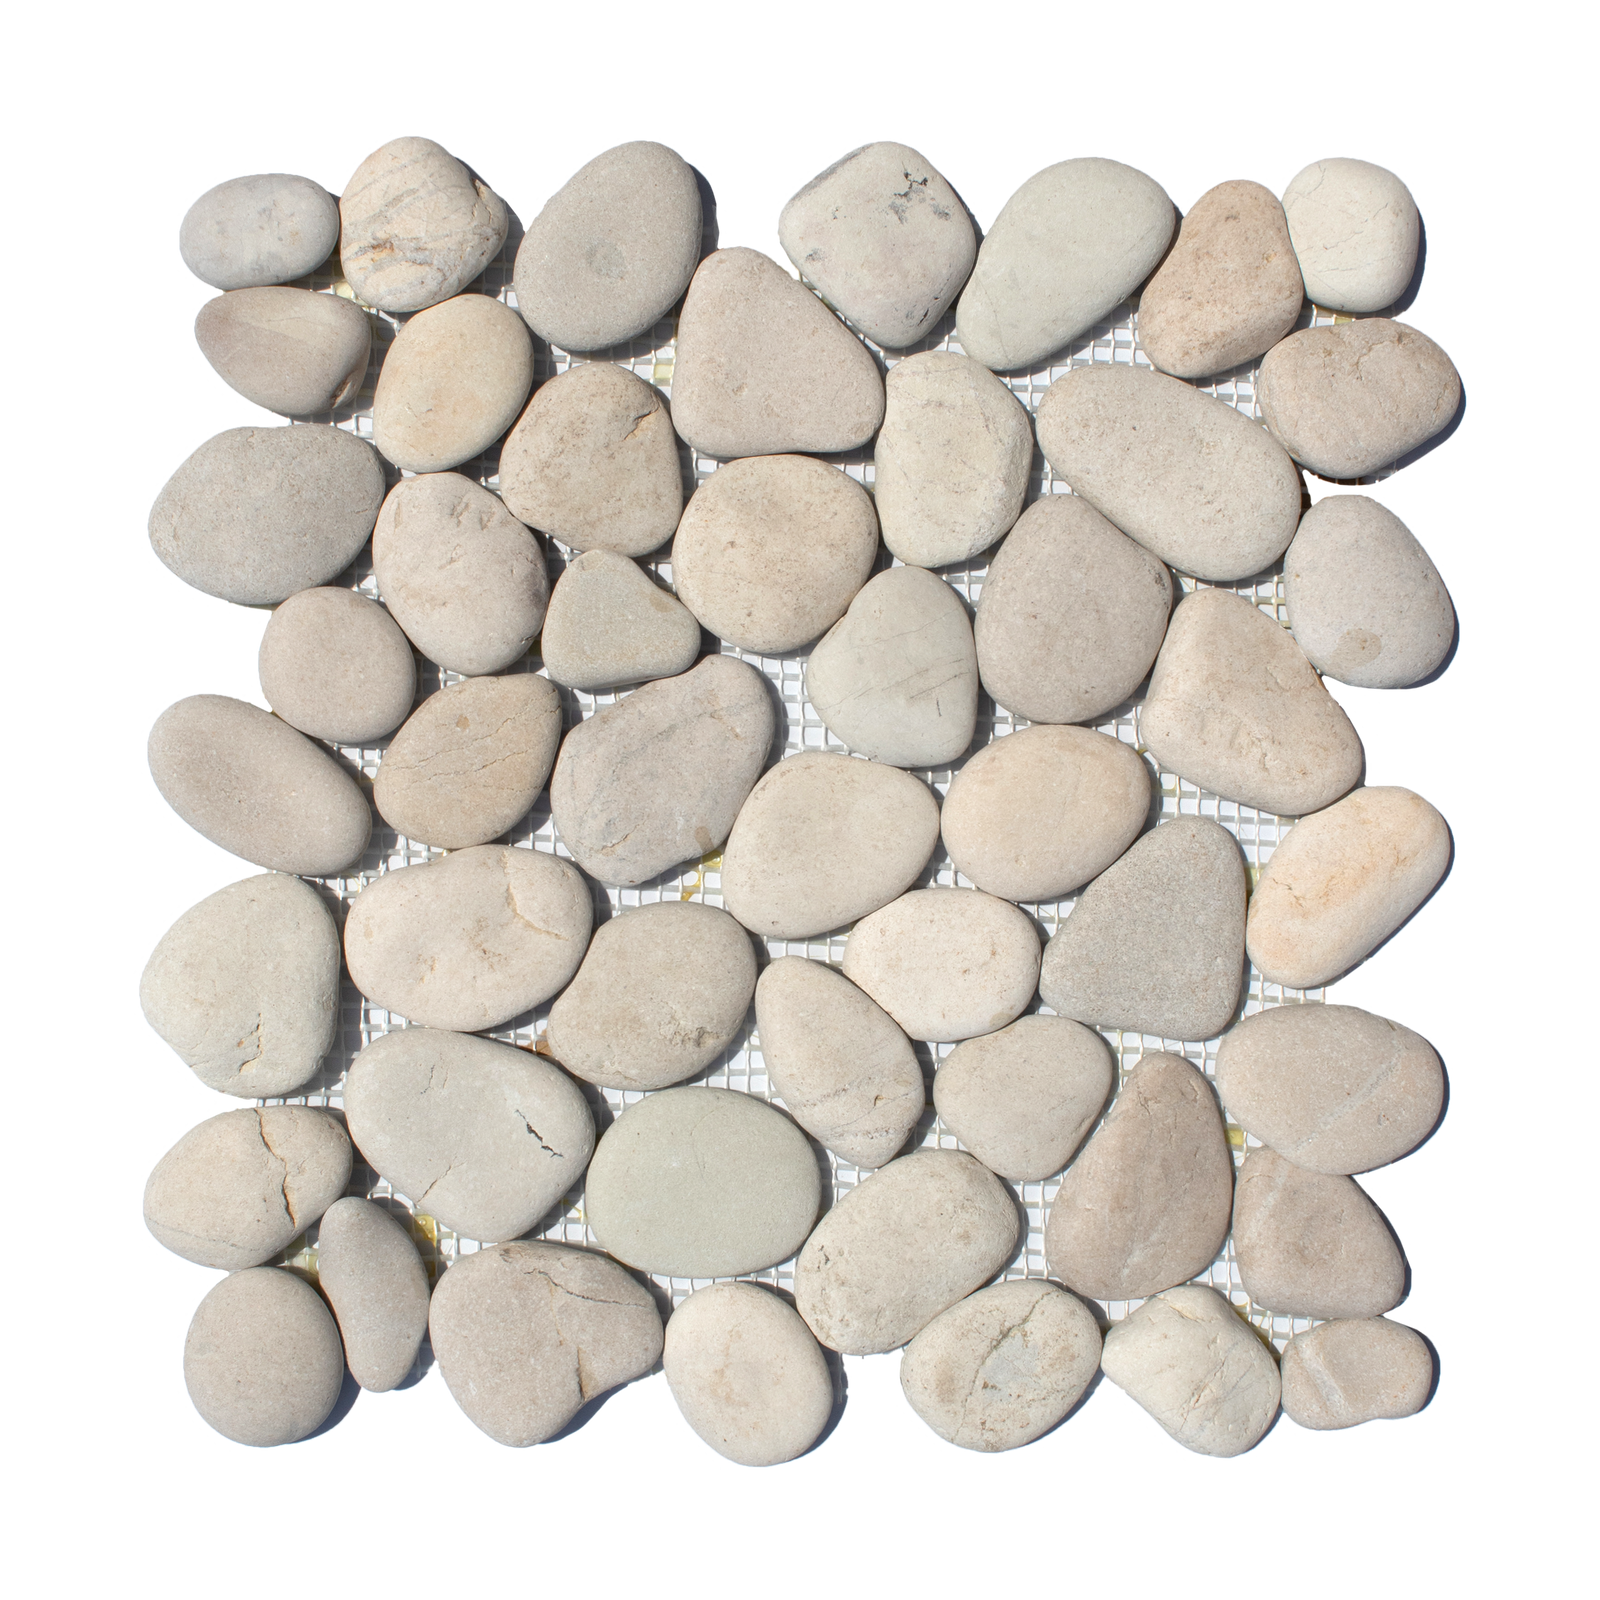 Cotton White Random Size Polished Pebble Stone Mosaic